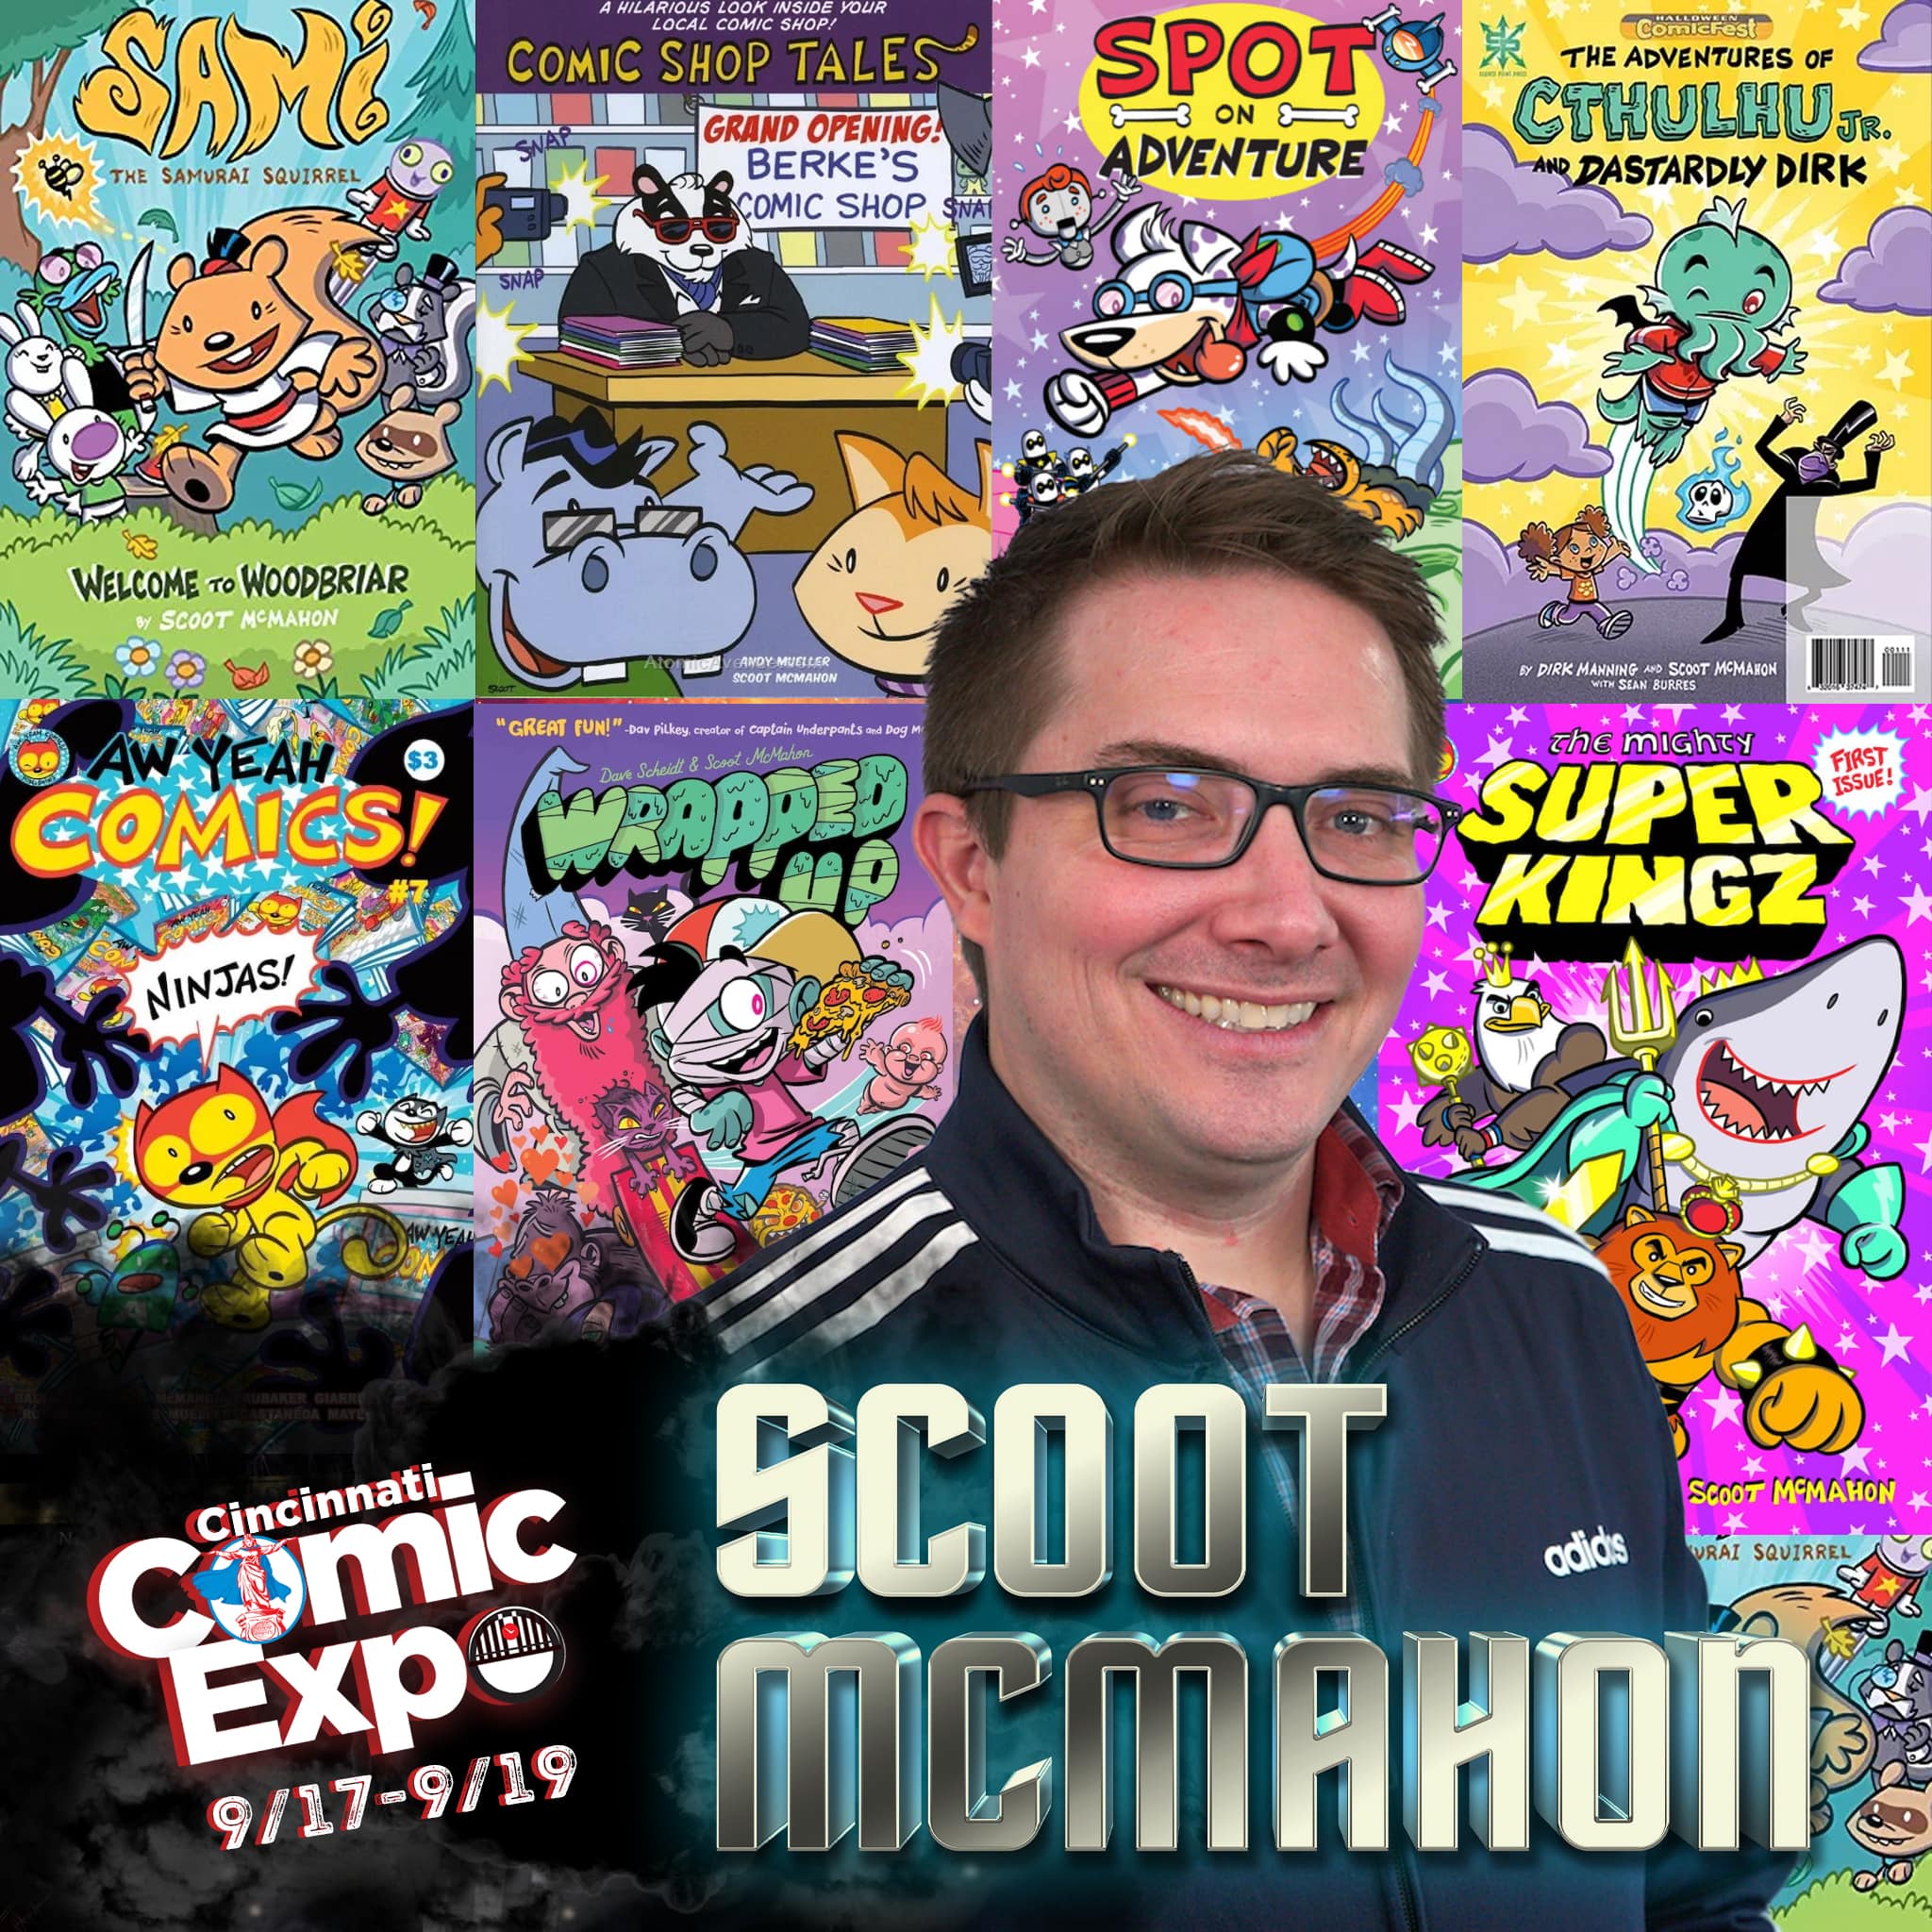 Cincinnati comic expo 2021 guests historypoliz